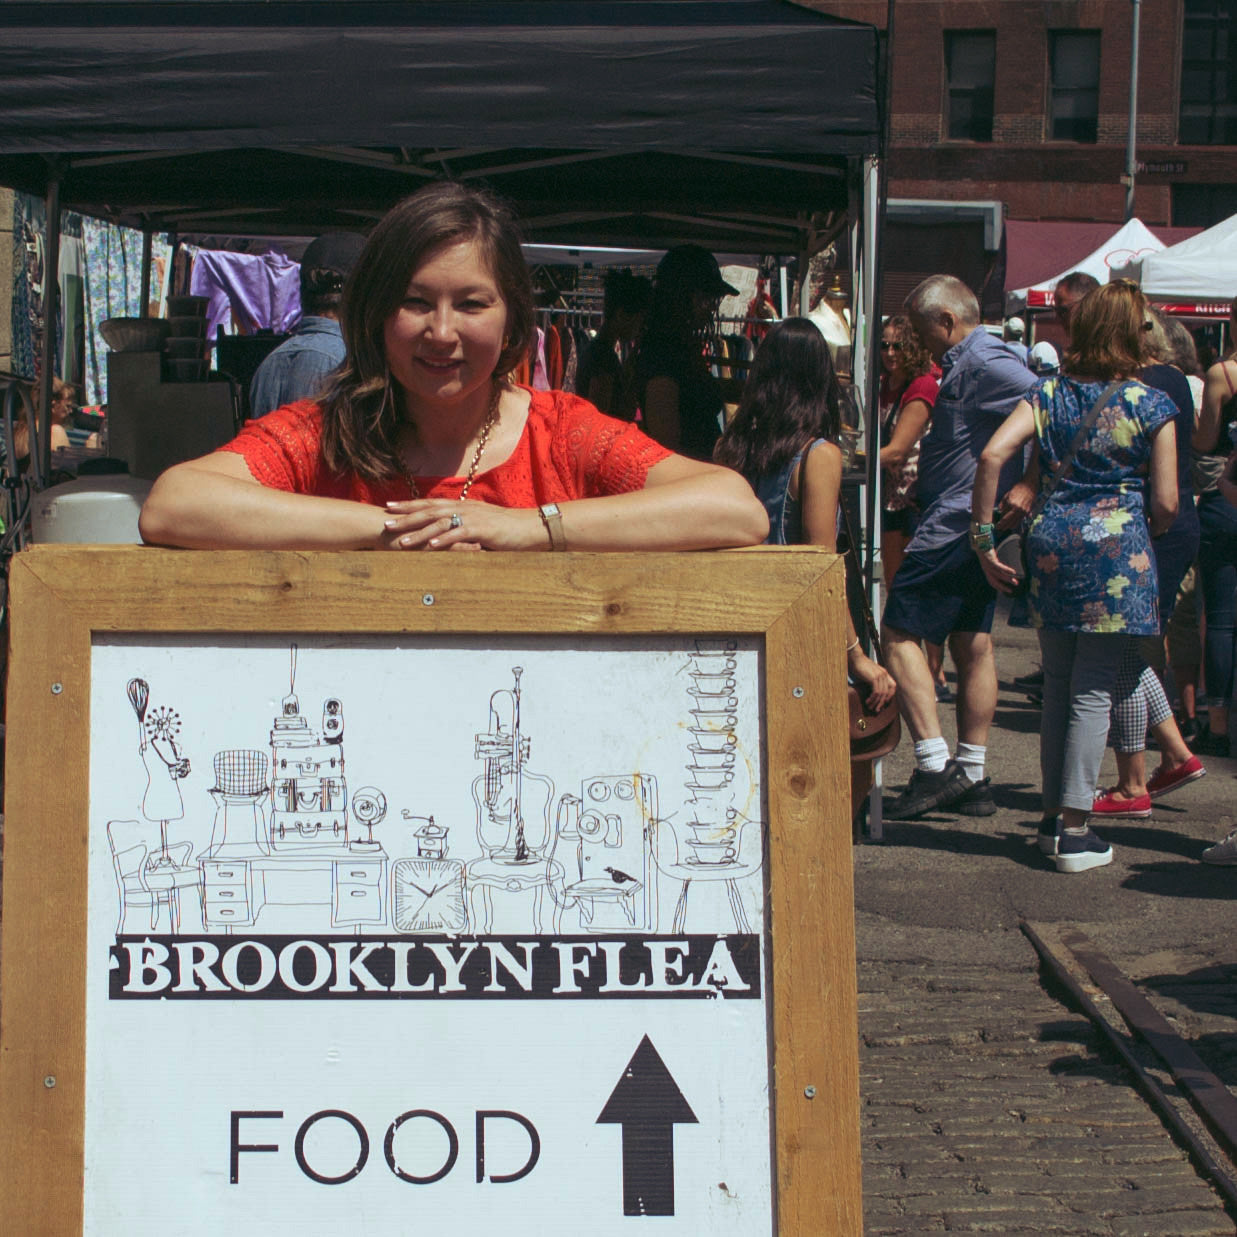 Brooklyn flea market